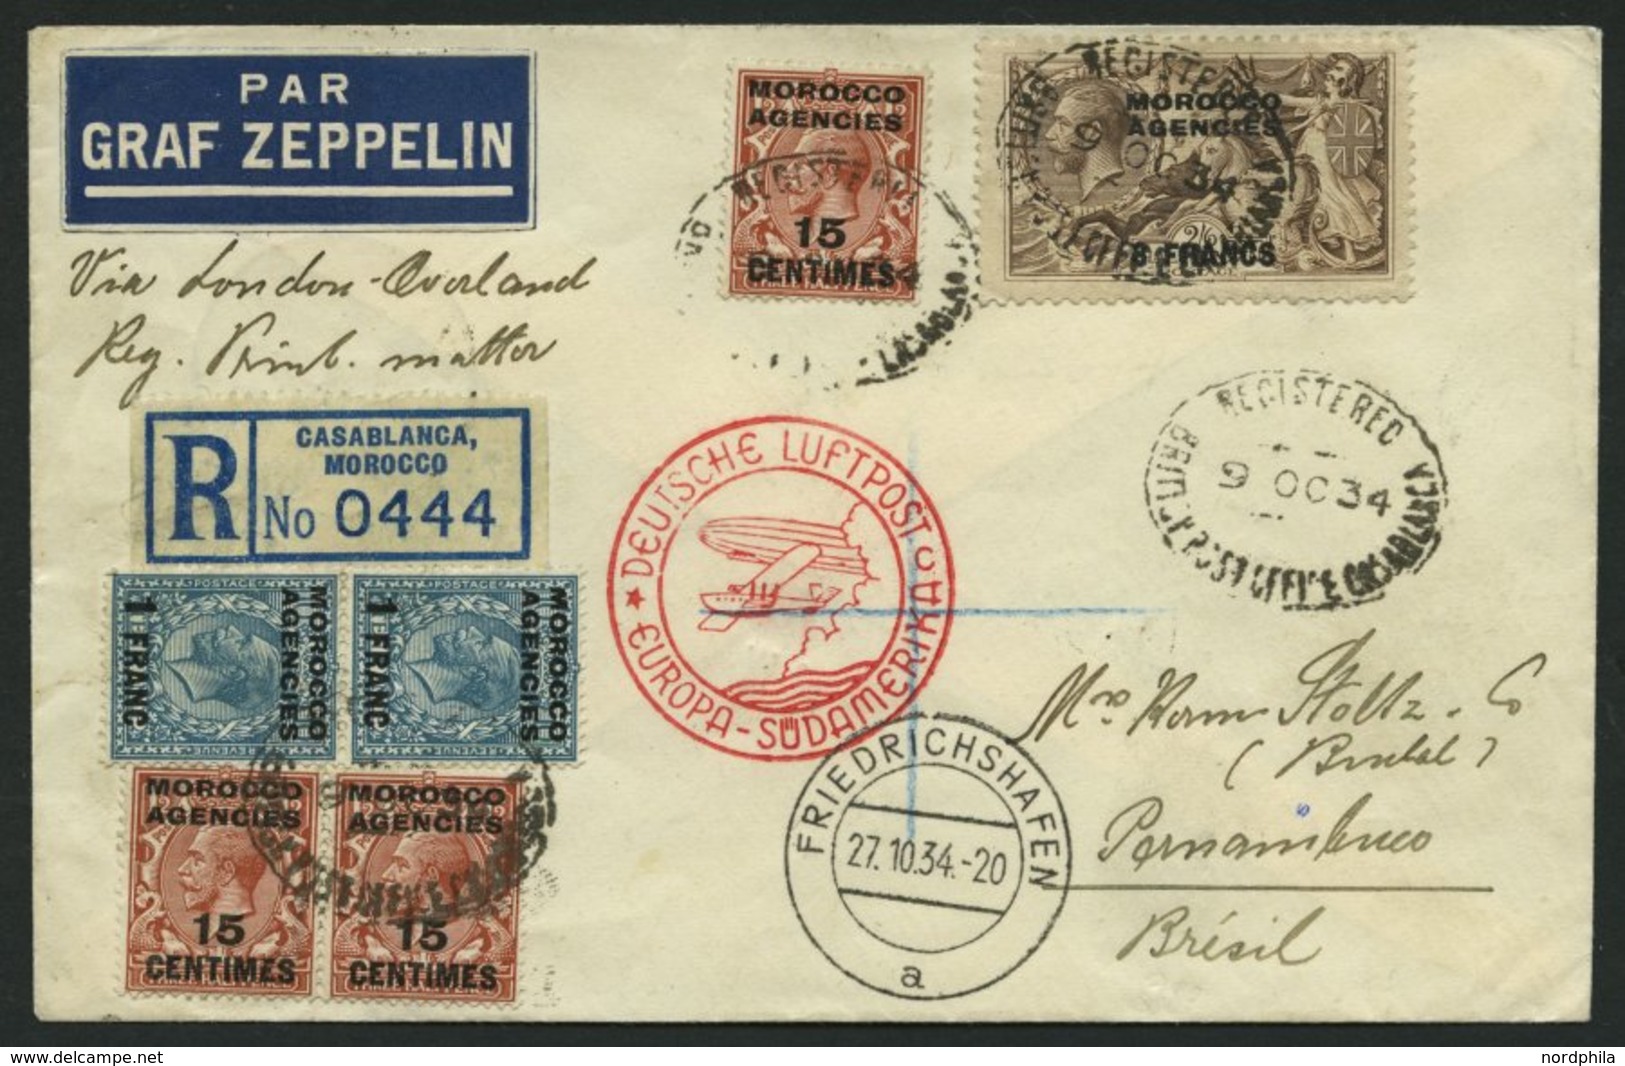 ZULEITUNGSPOST 283 BRIEF, Britische Post In Marokko (Französische Zone): 1934, 11. Südamerikafahrt, Einschreib-Drucksach - Correo Aéreo & Zeppelin